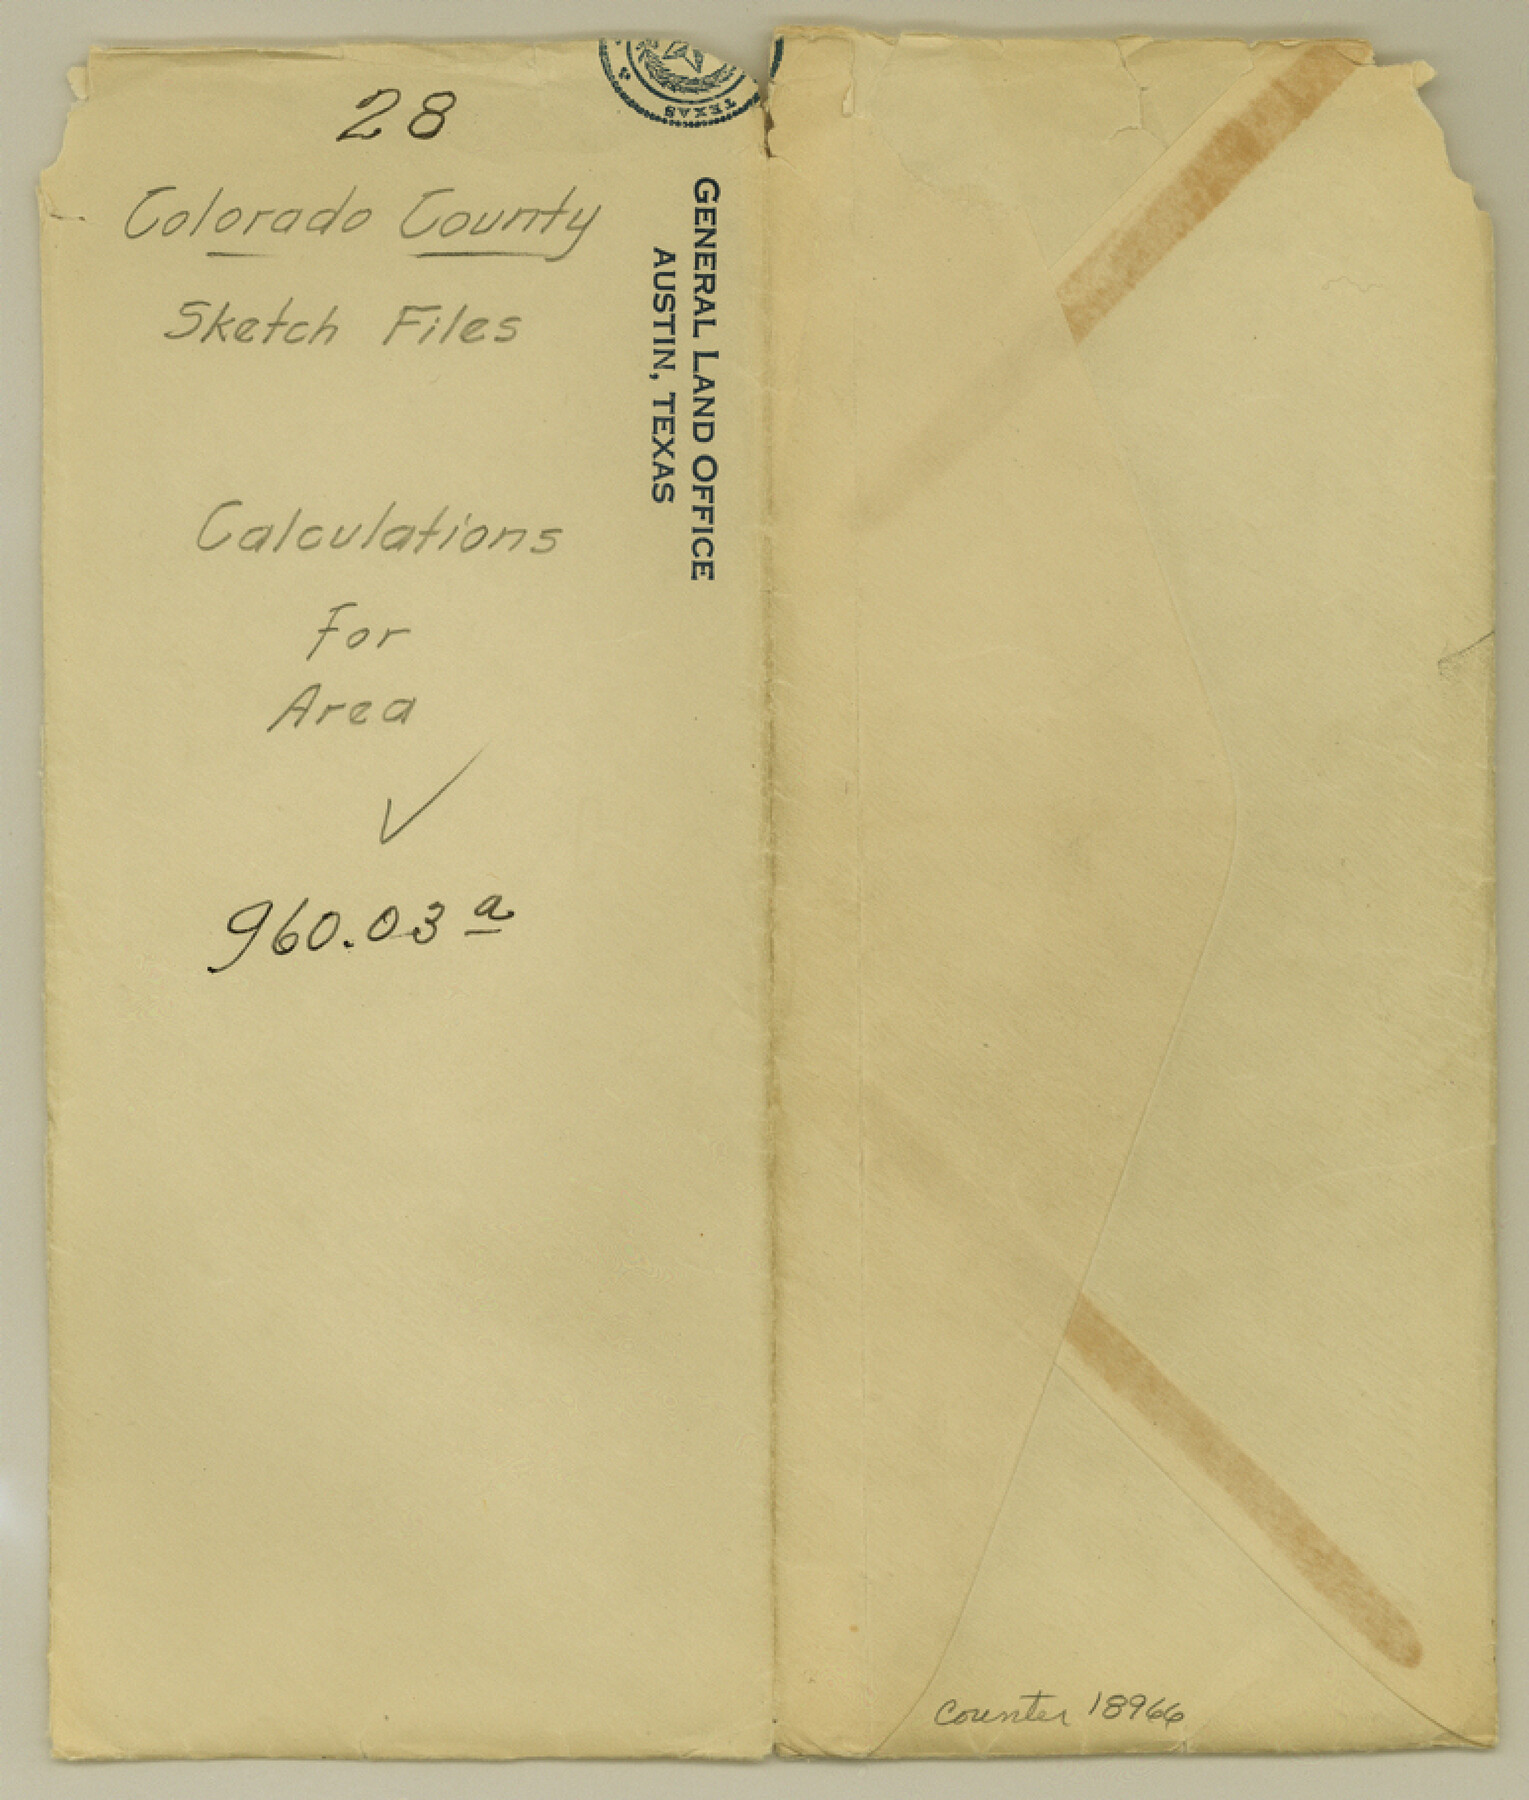 18966, Colorado County Sketch File 28, General Map Collection